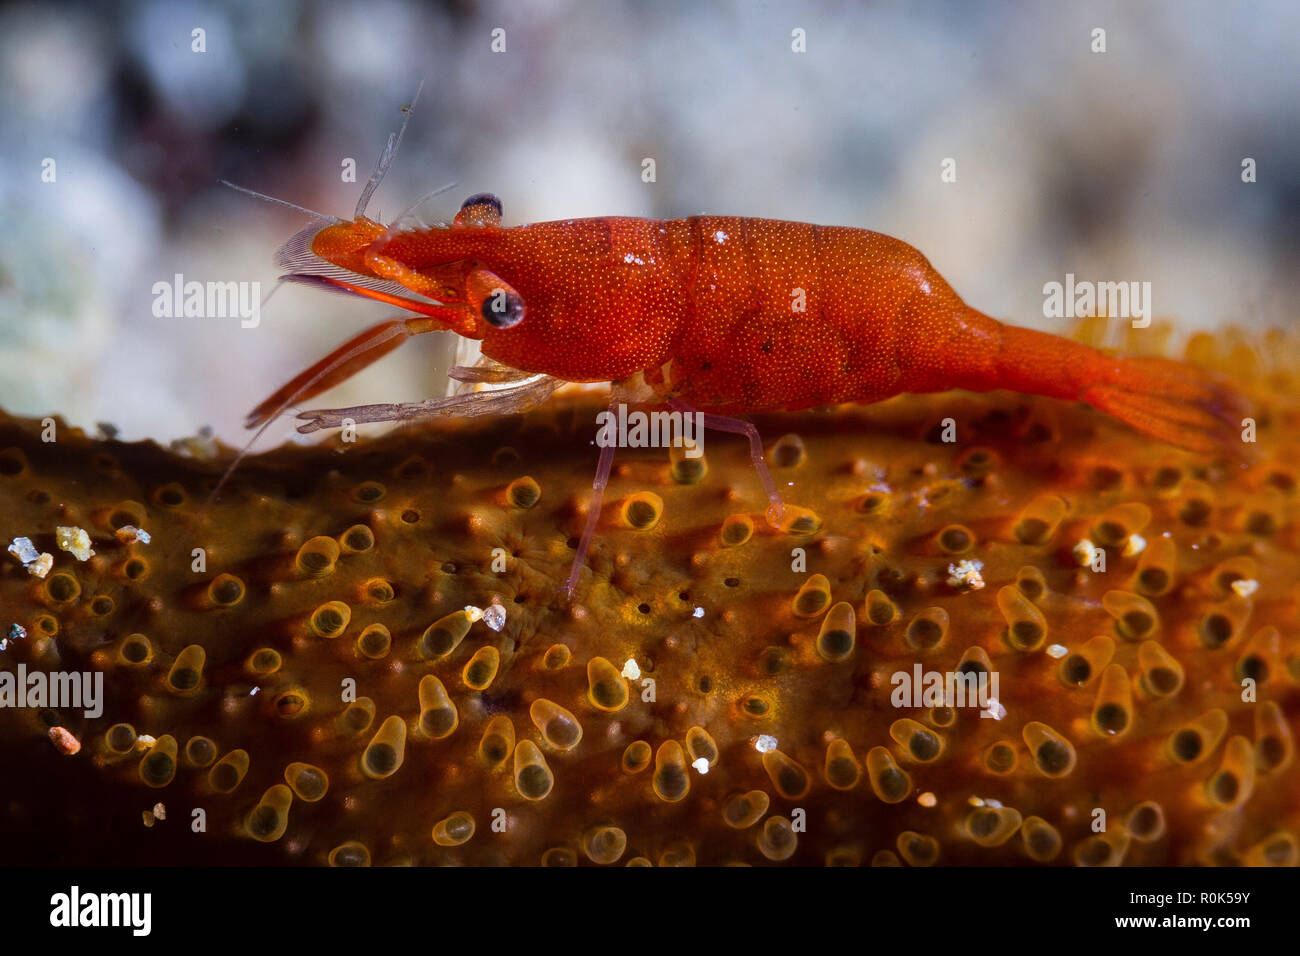 A tiny seastar shrimp posing on top of its host. Stock Photo